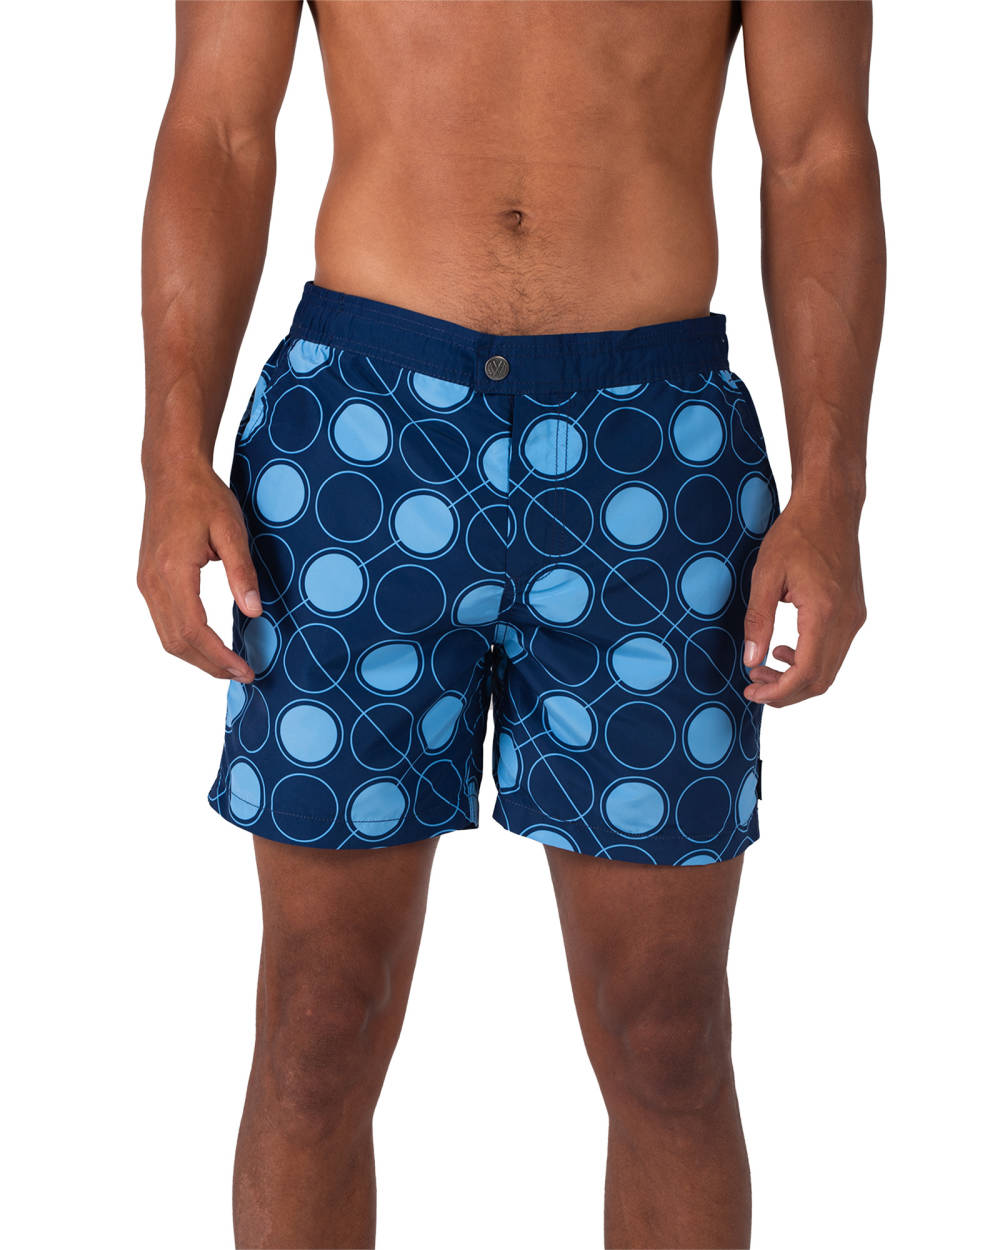 Coast Clothing Co. - Sydney Swim shorts - Bronte